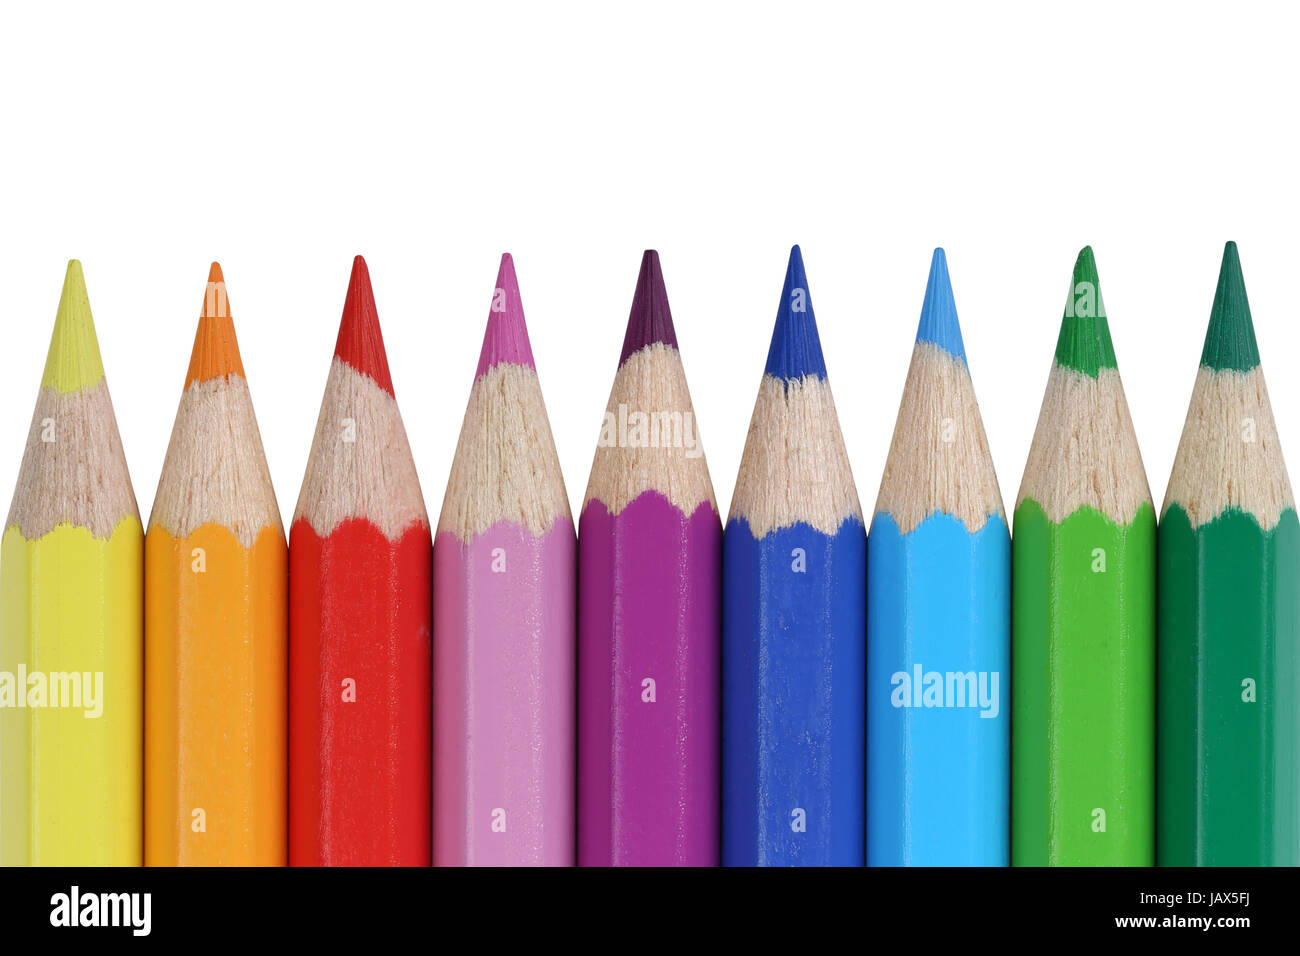 Buntstifte für die Schule in einer Reihe, isoliert vor einem weissen Hintergrund Stock Photo